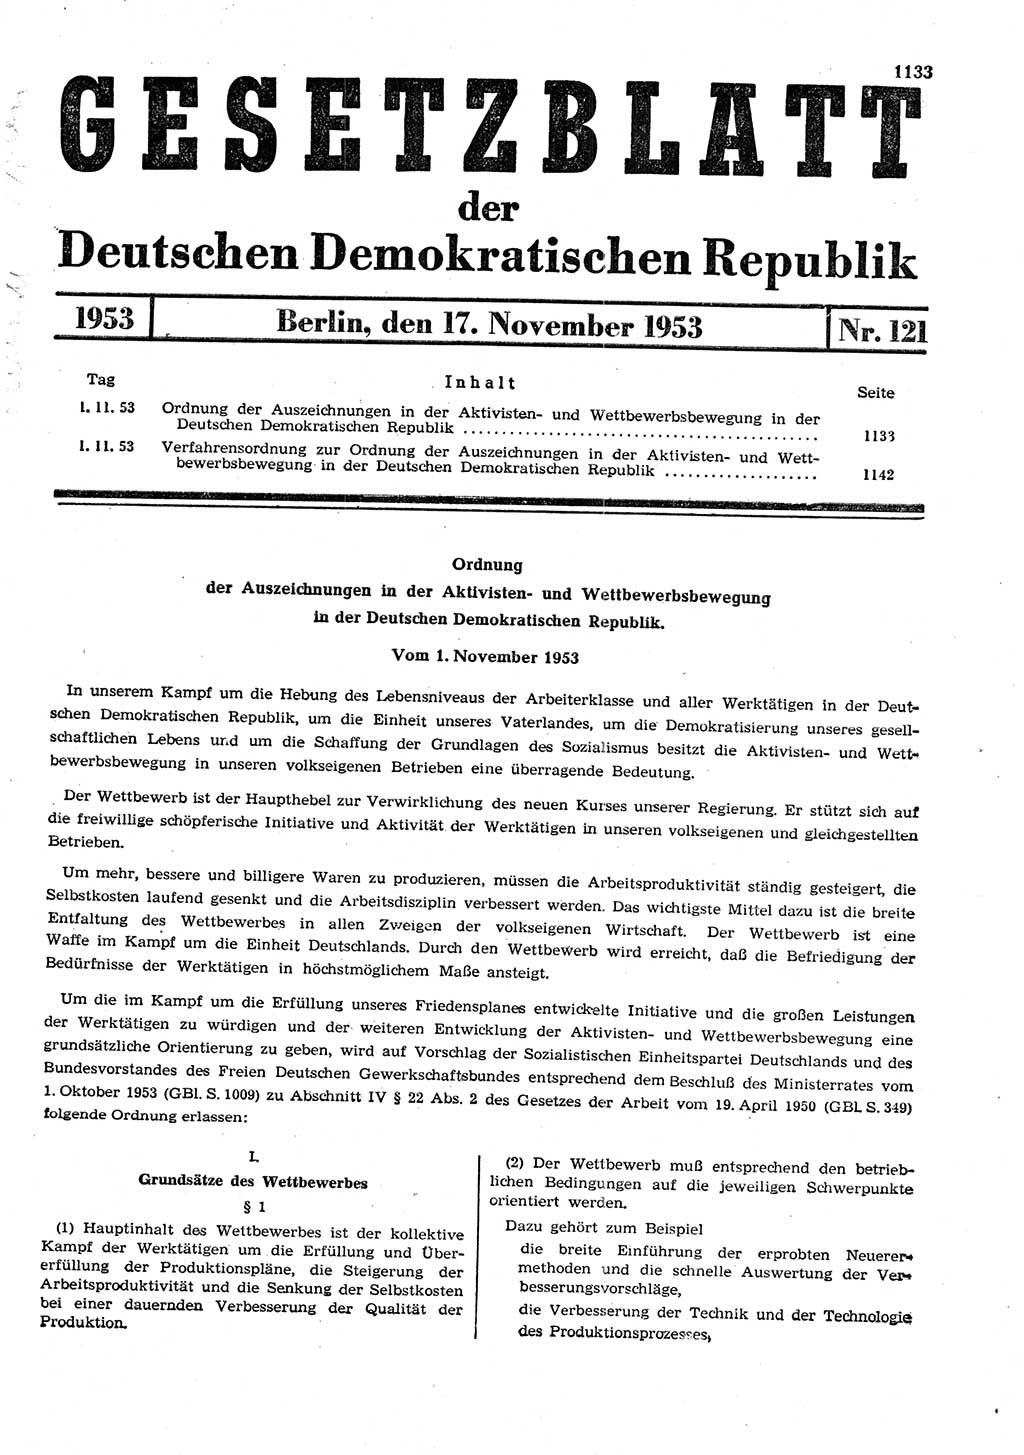 Gesetzblatt (GBl.) der Deutschen Demokratischen Republik (DDR) 1953, Seite 1133 (GBl. DDR 1953, S. 1133)